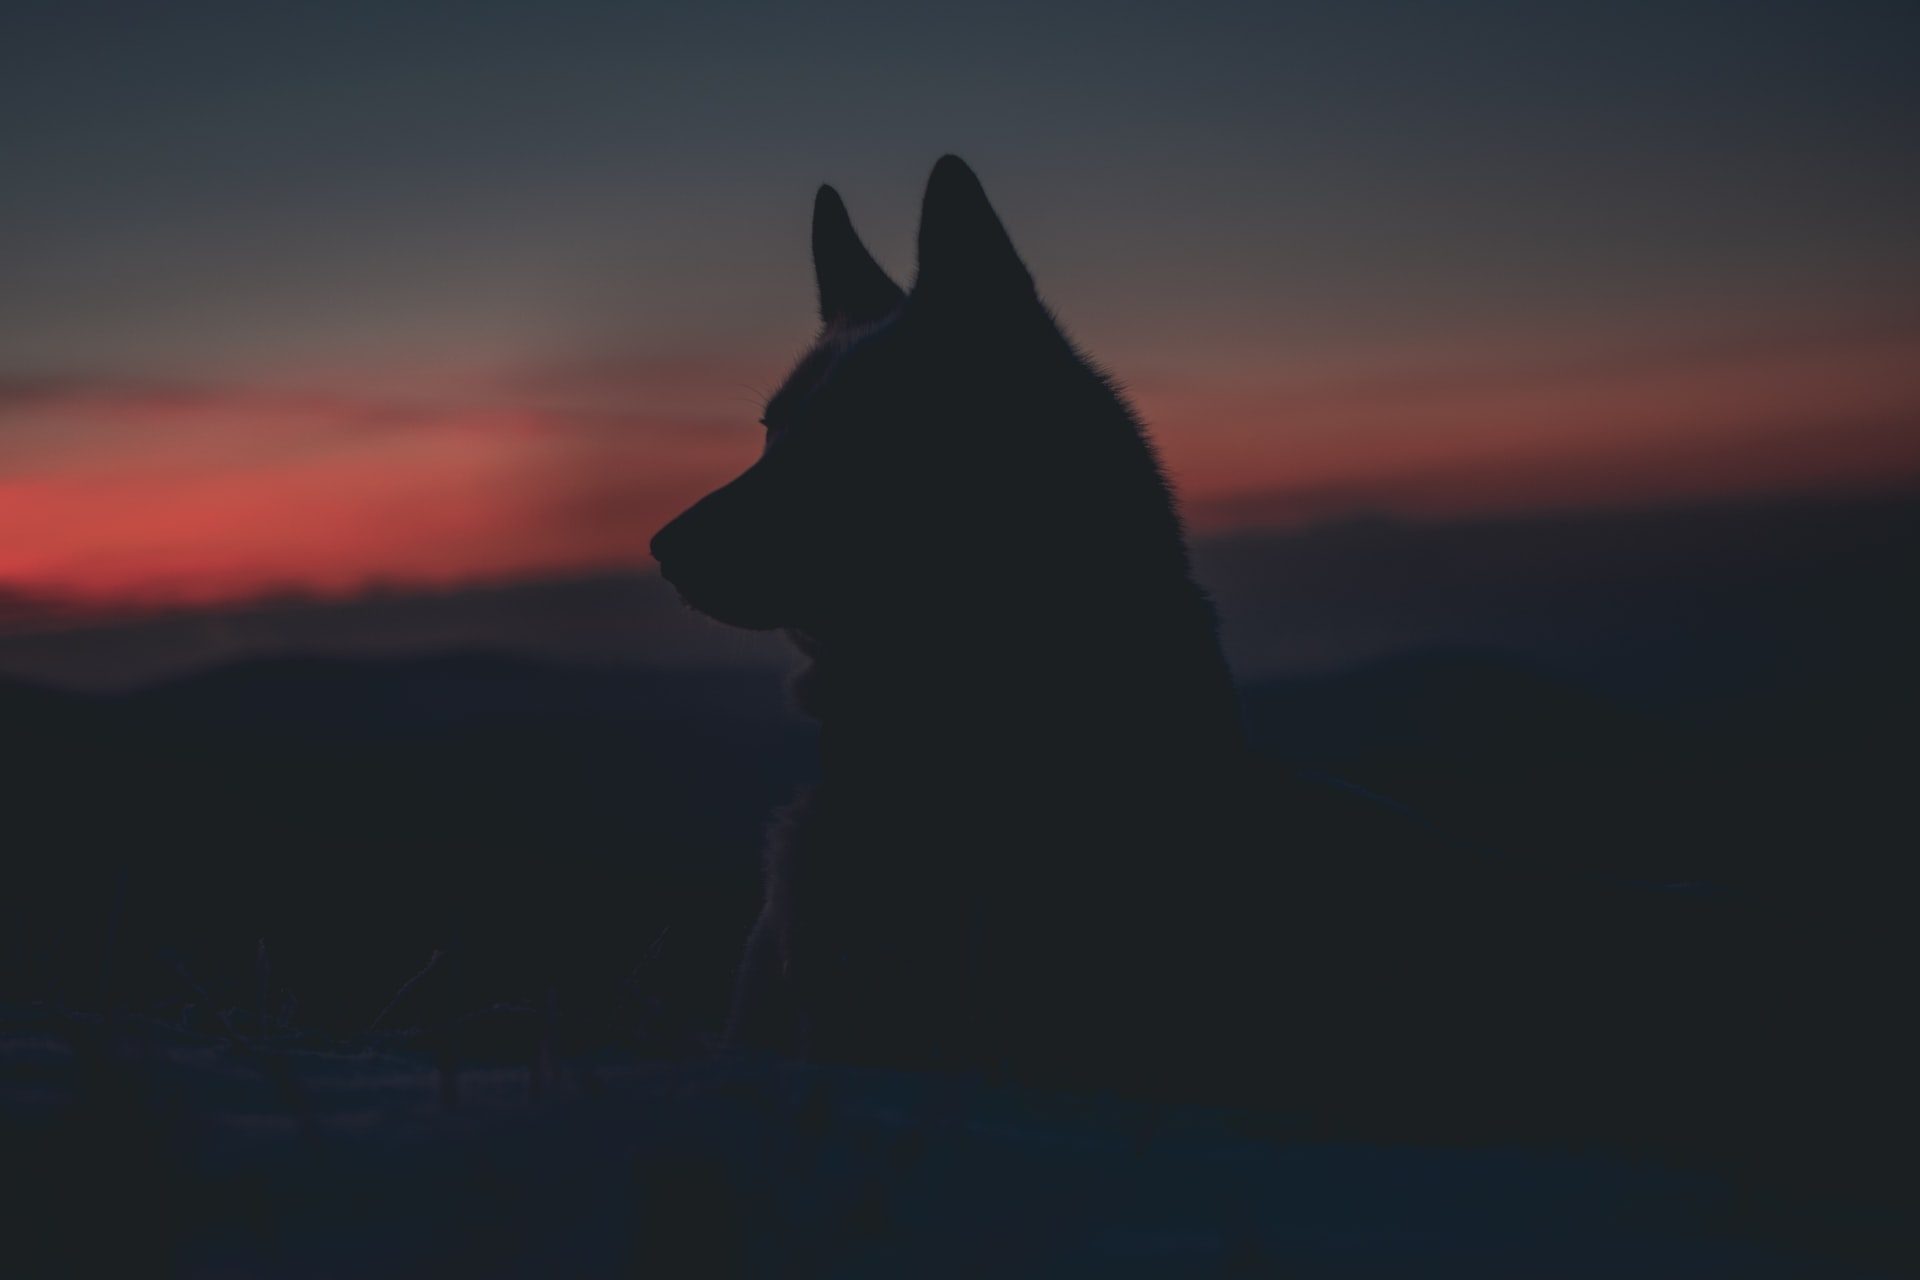 Wolvenupdate: eén van de wolven is vermist, misschien zelfs vergiftigd